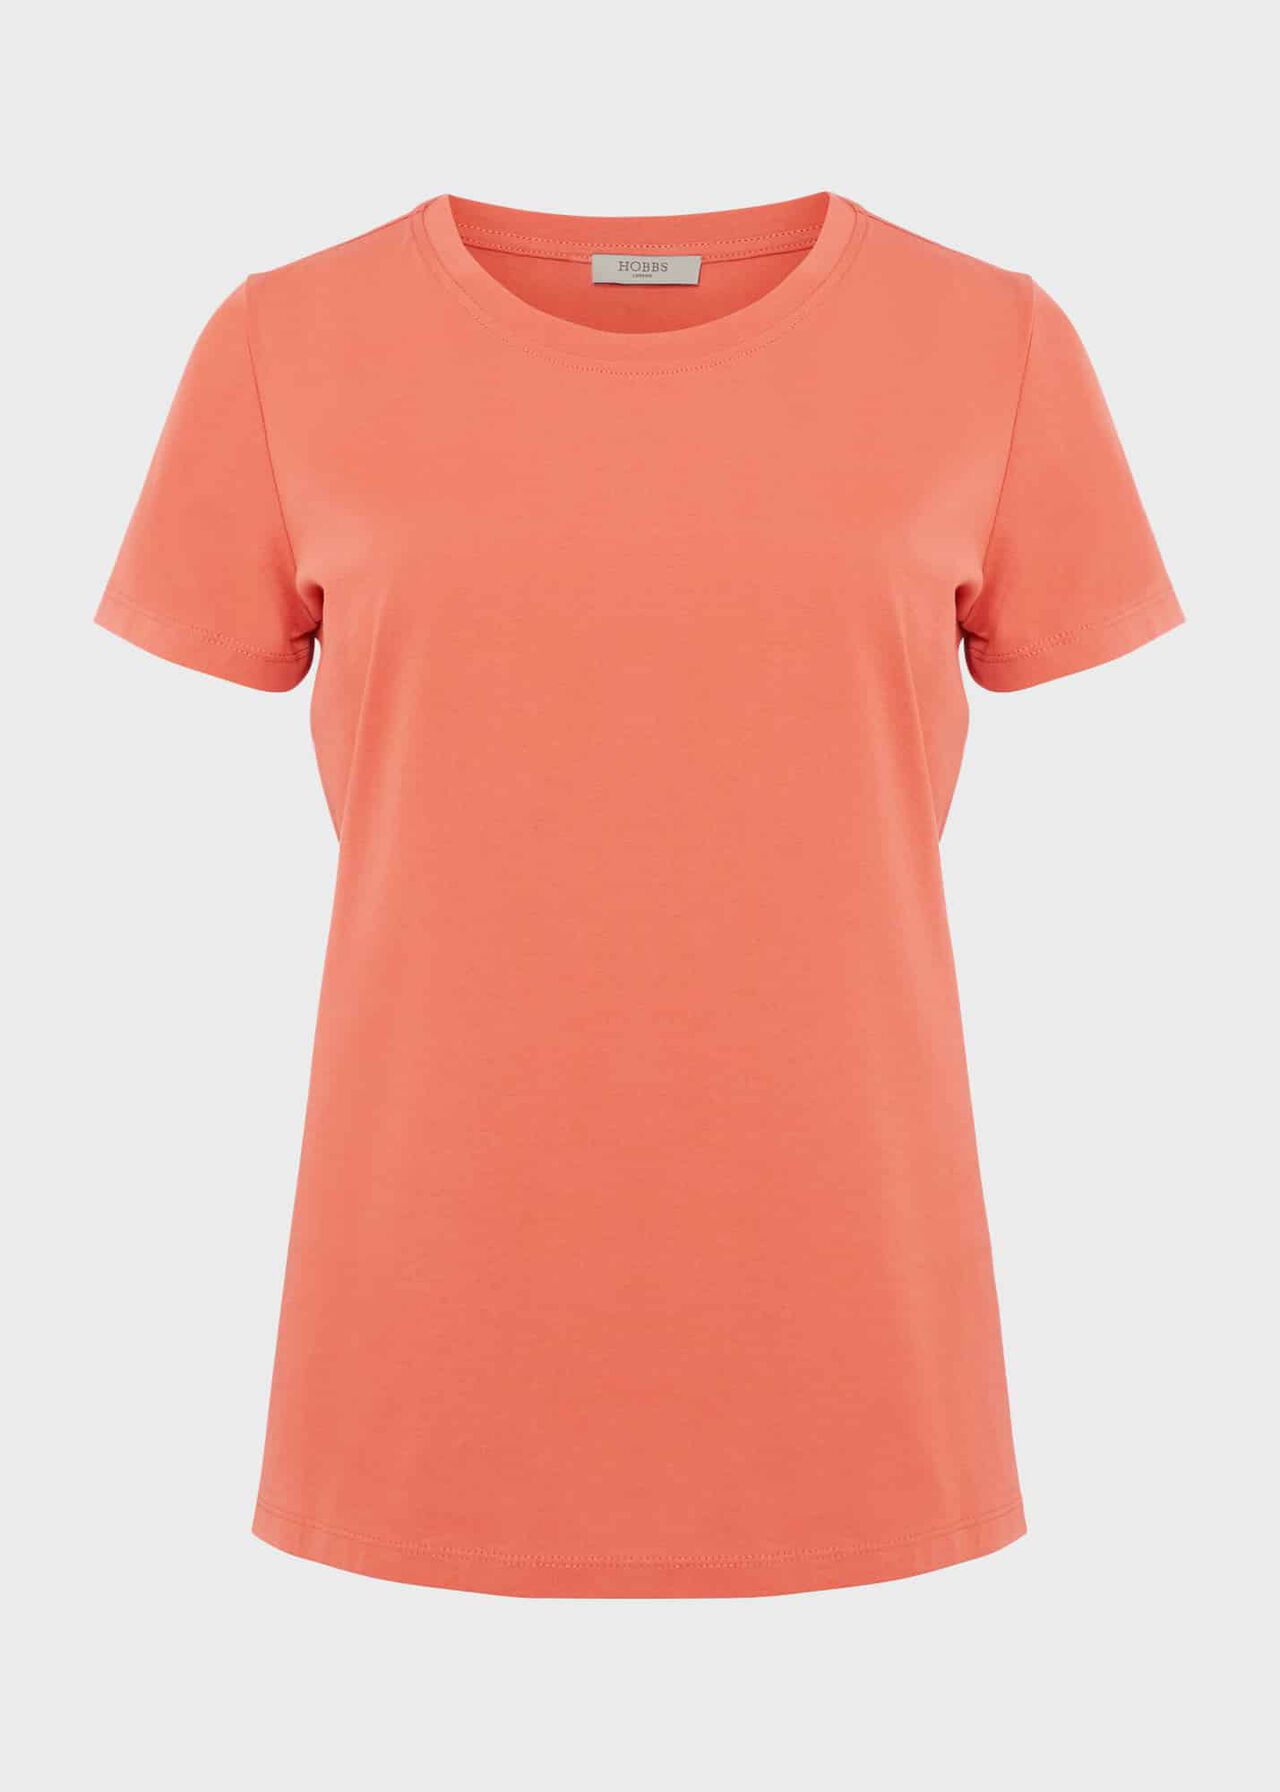 Pixie Cotton T-Shirt, Deep Apricot, hi-res